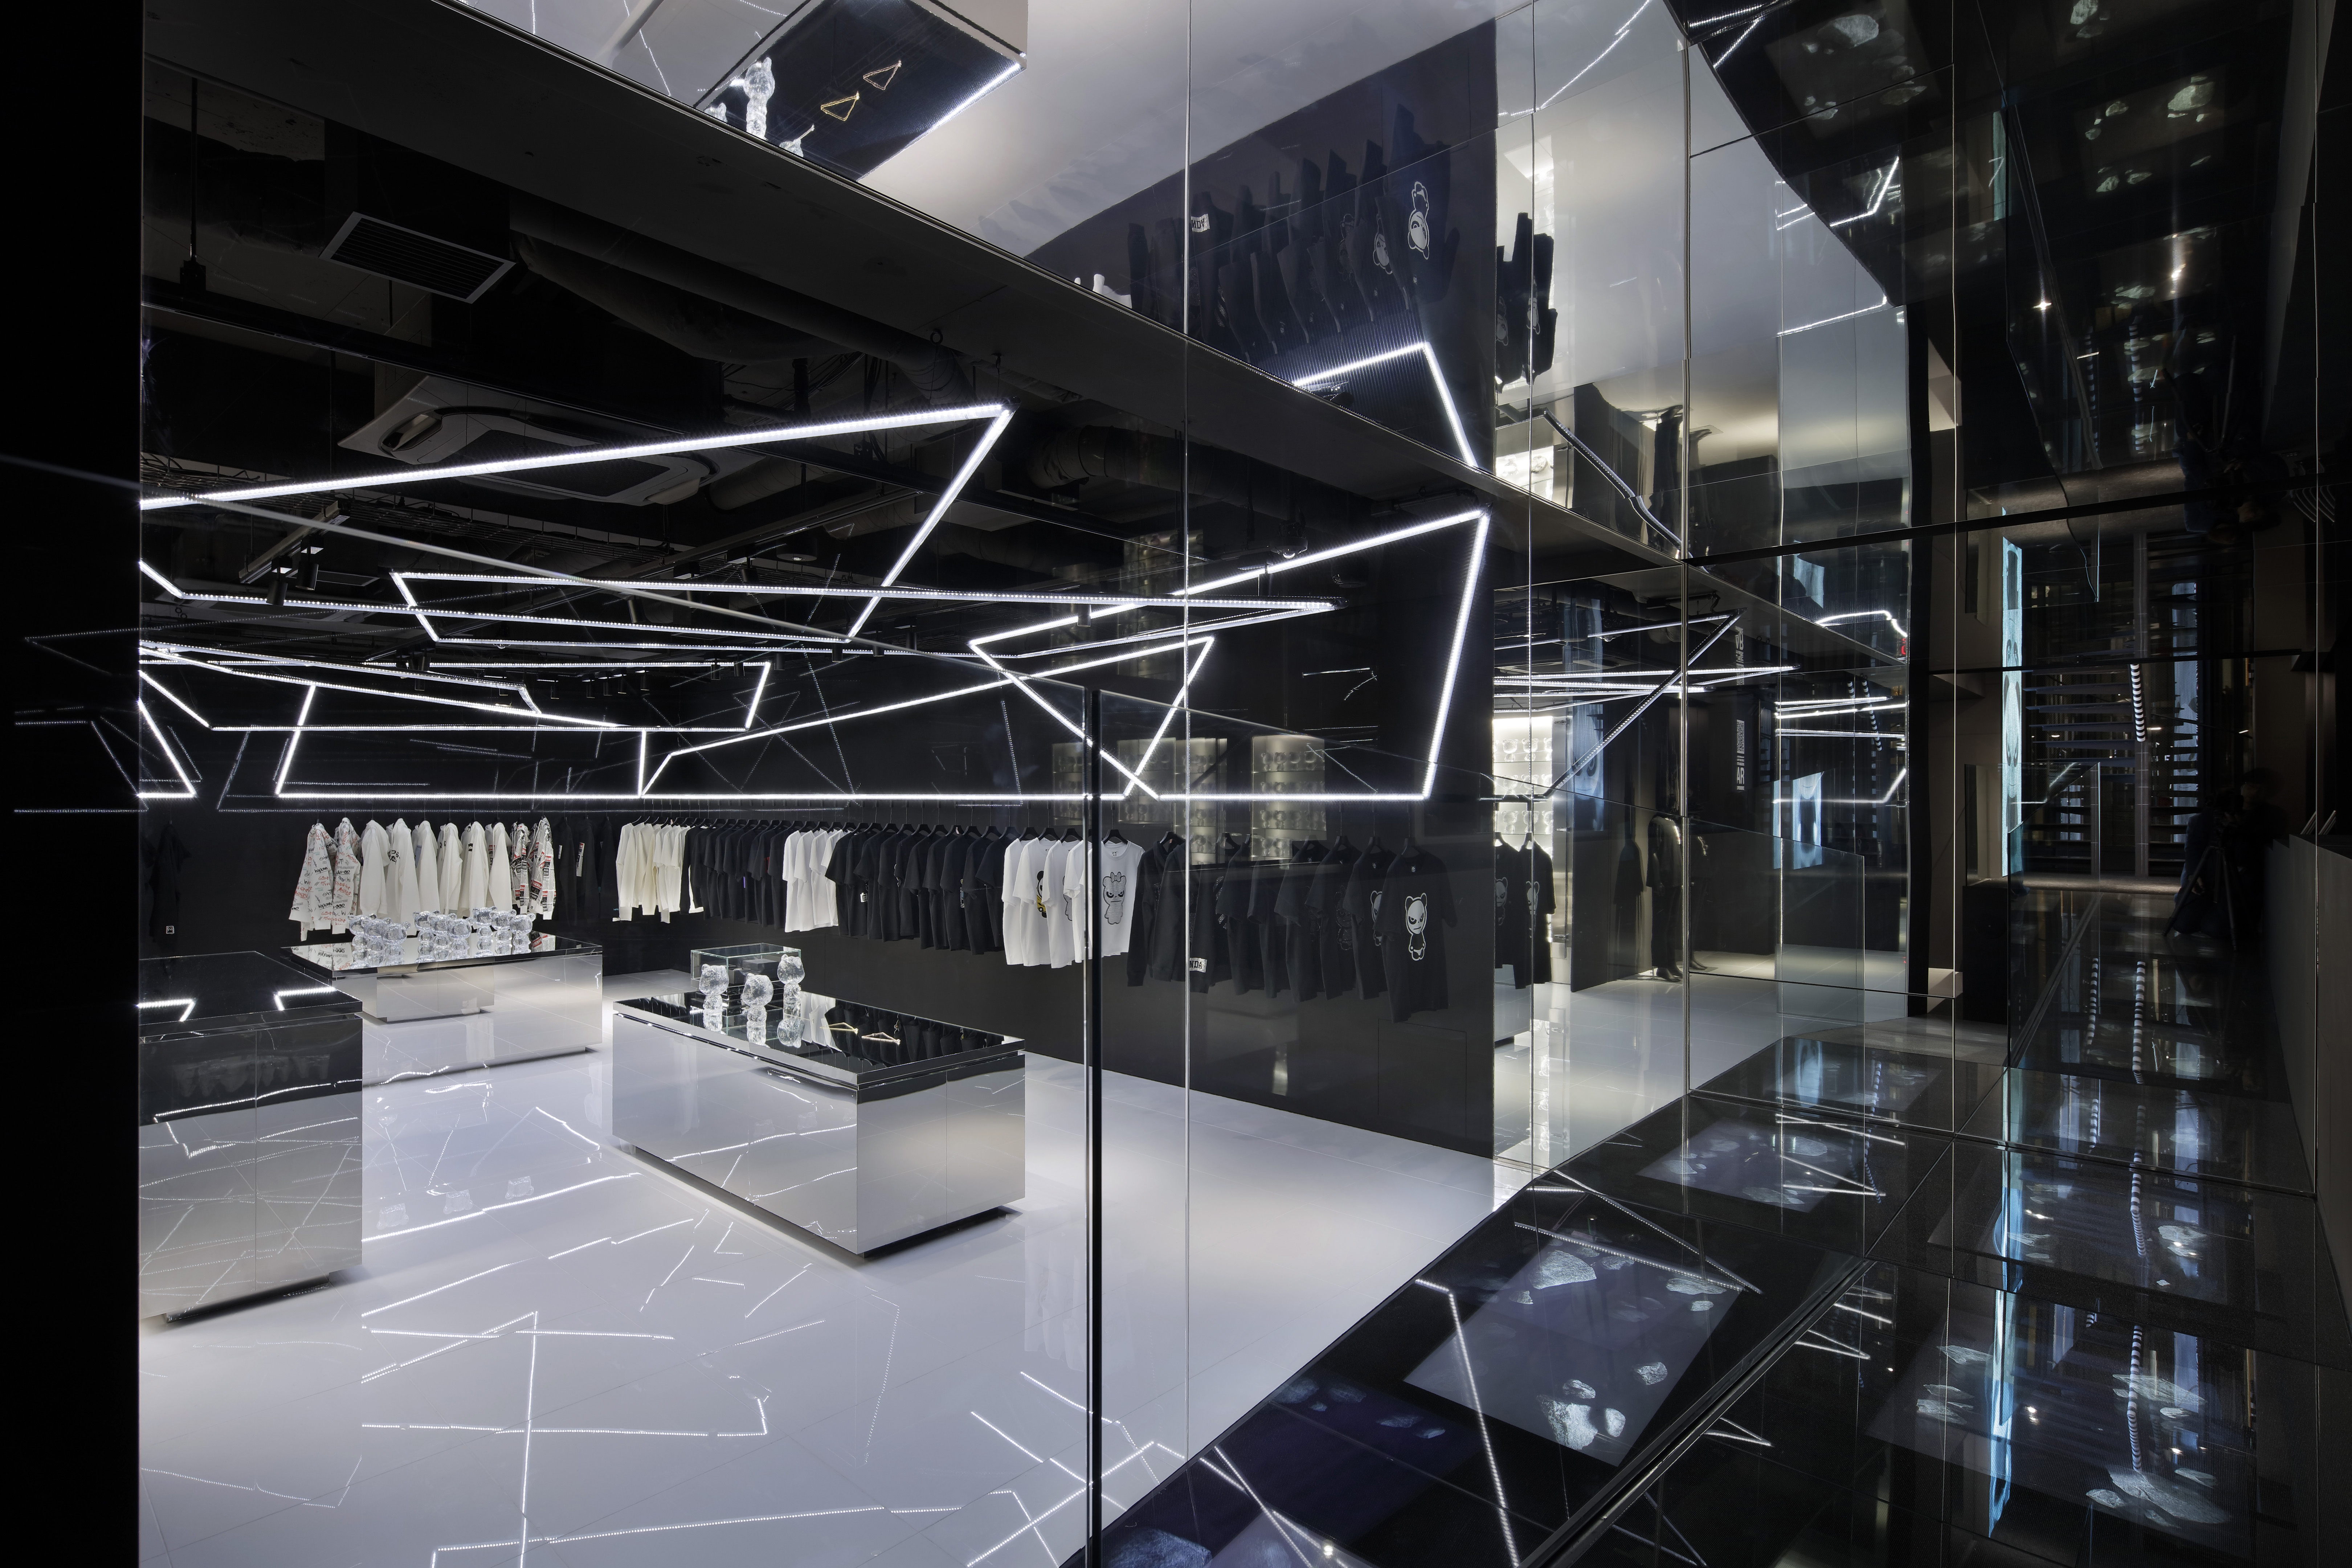 O design de interiores da loja é mais sóbrio e moderno, mas o diferencial é na experiência promovida pela tecnologia (Foto: Satoshio Shigeta / Cortesia Curiosity)